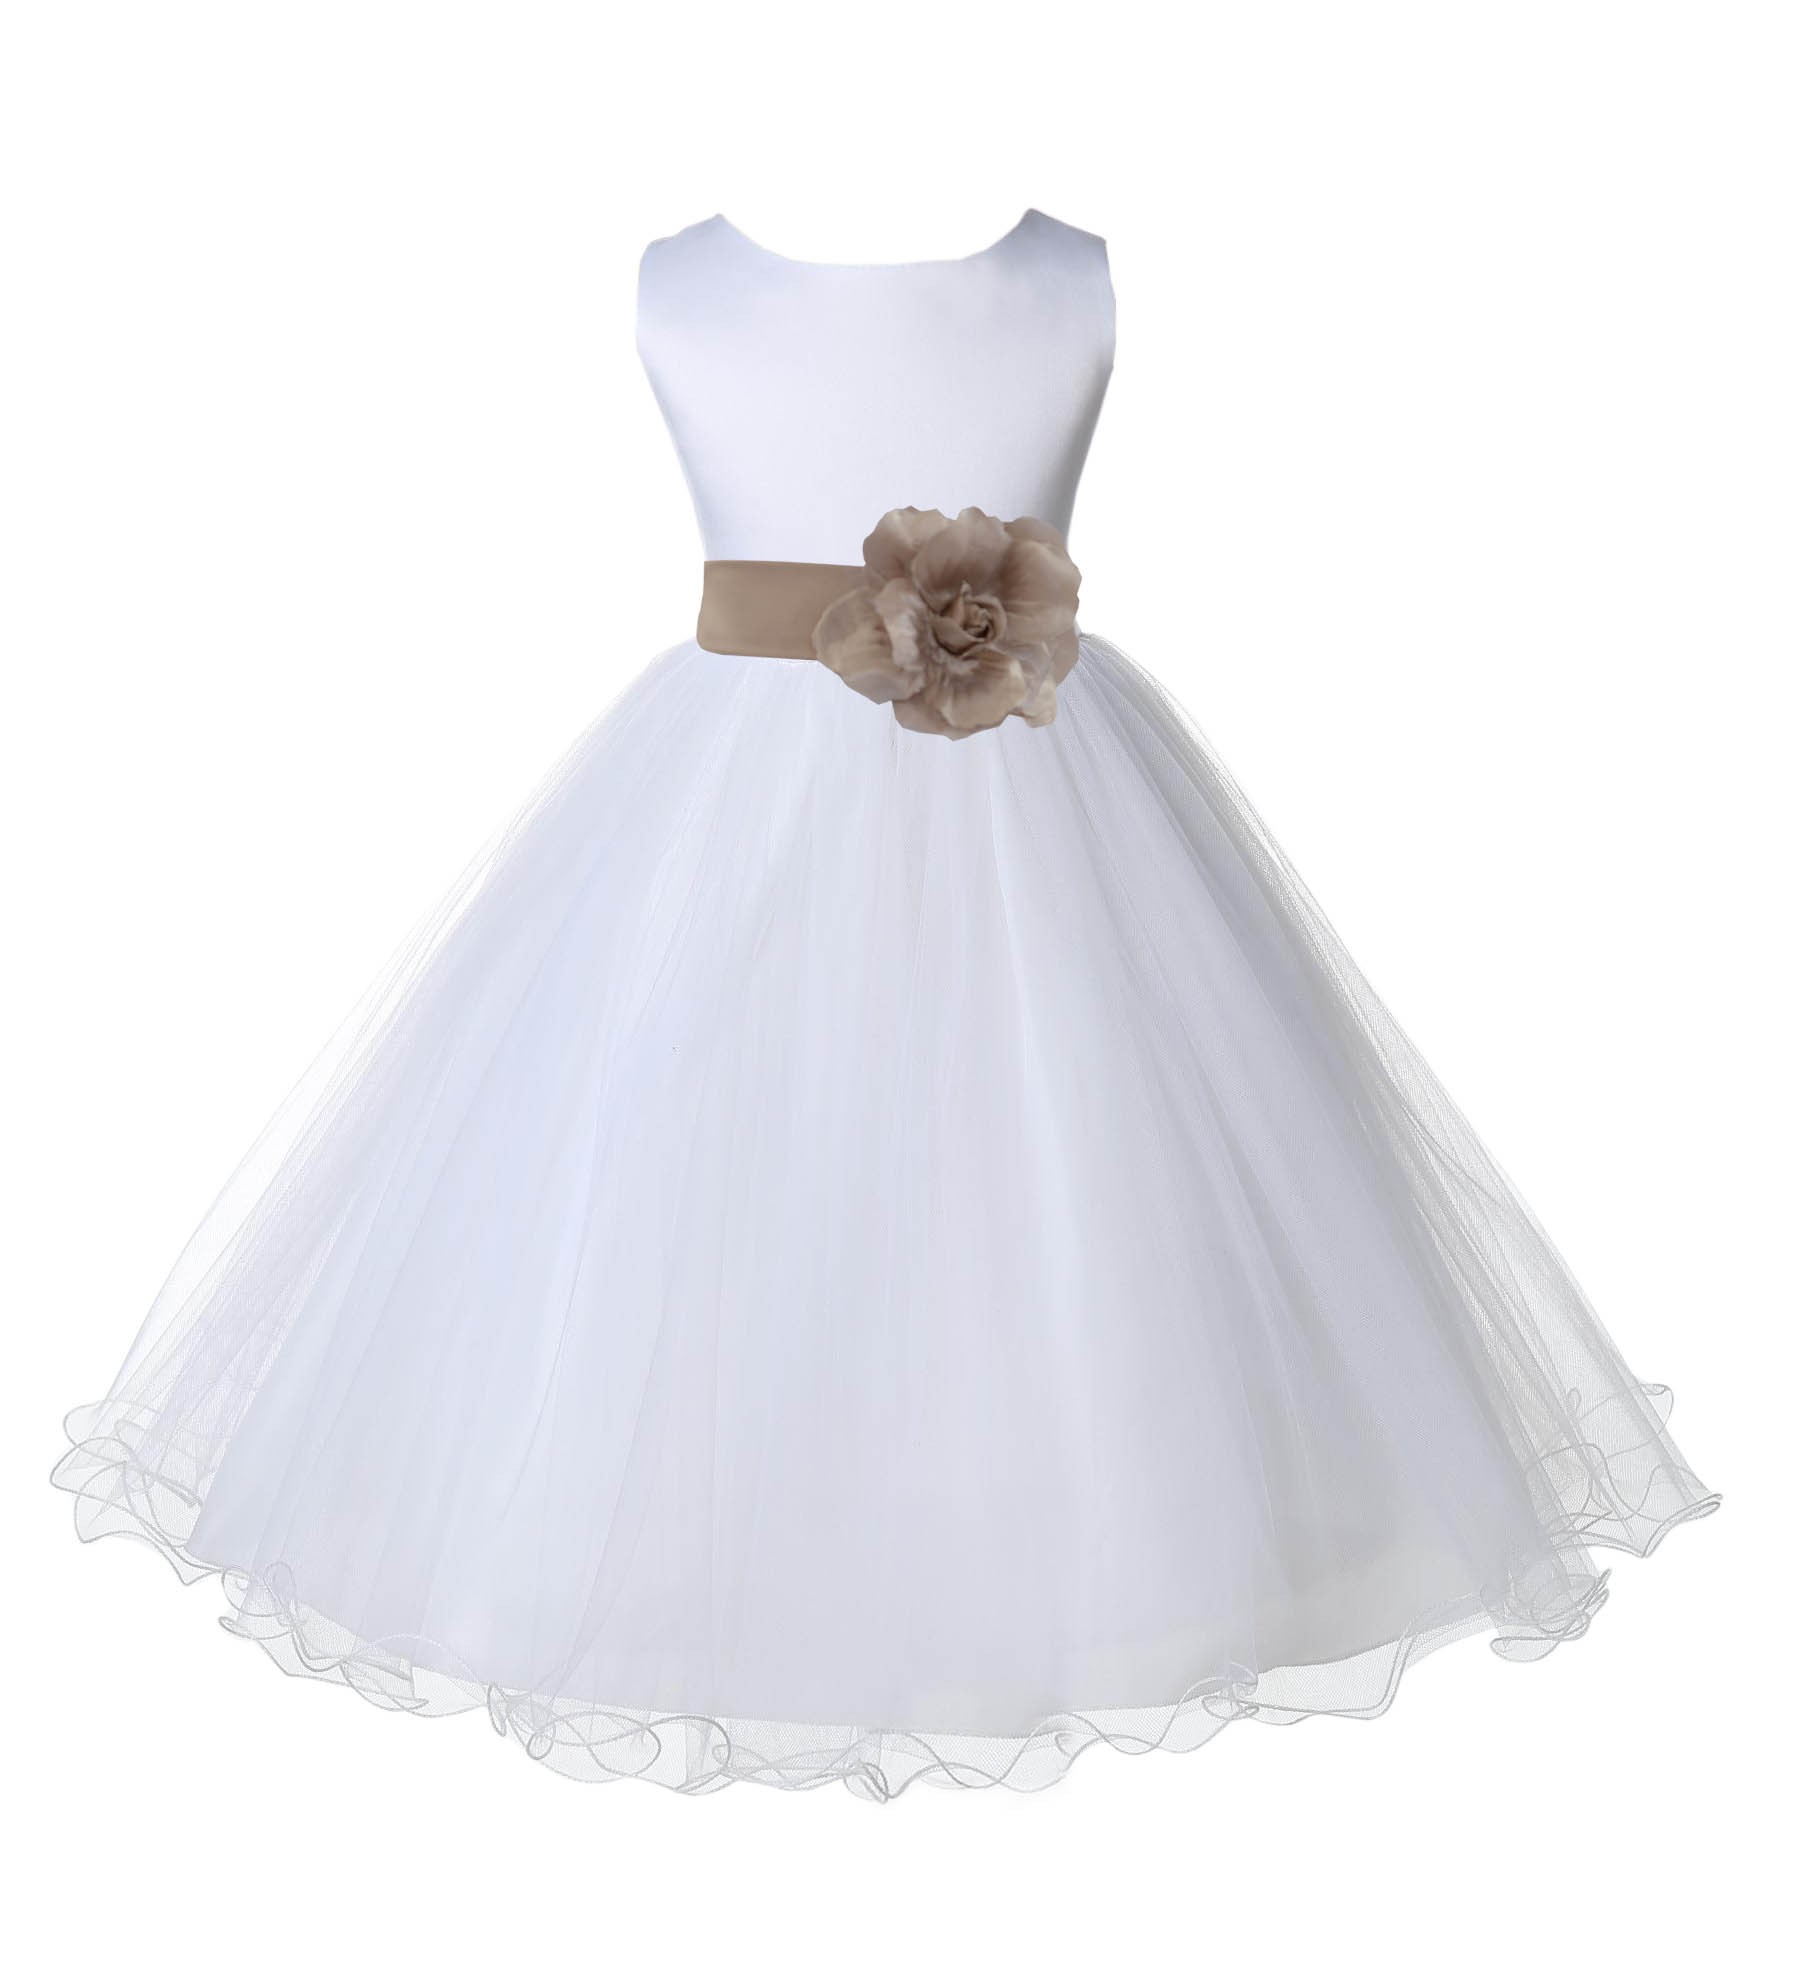 White/Champagne Tulle Rattail Edge Flower Girl Dress Wedding Bridal 829S